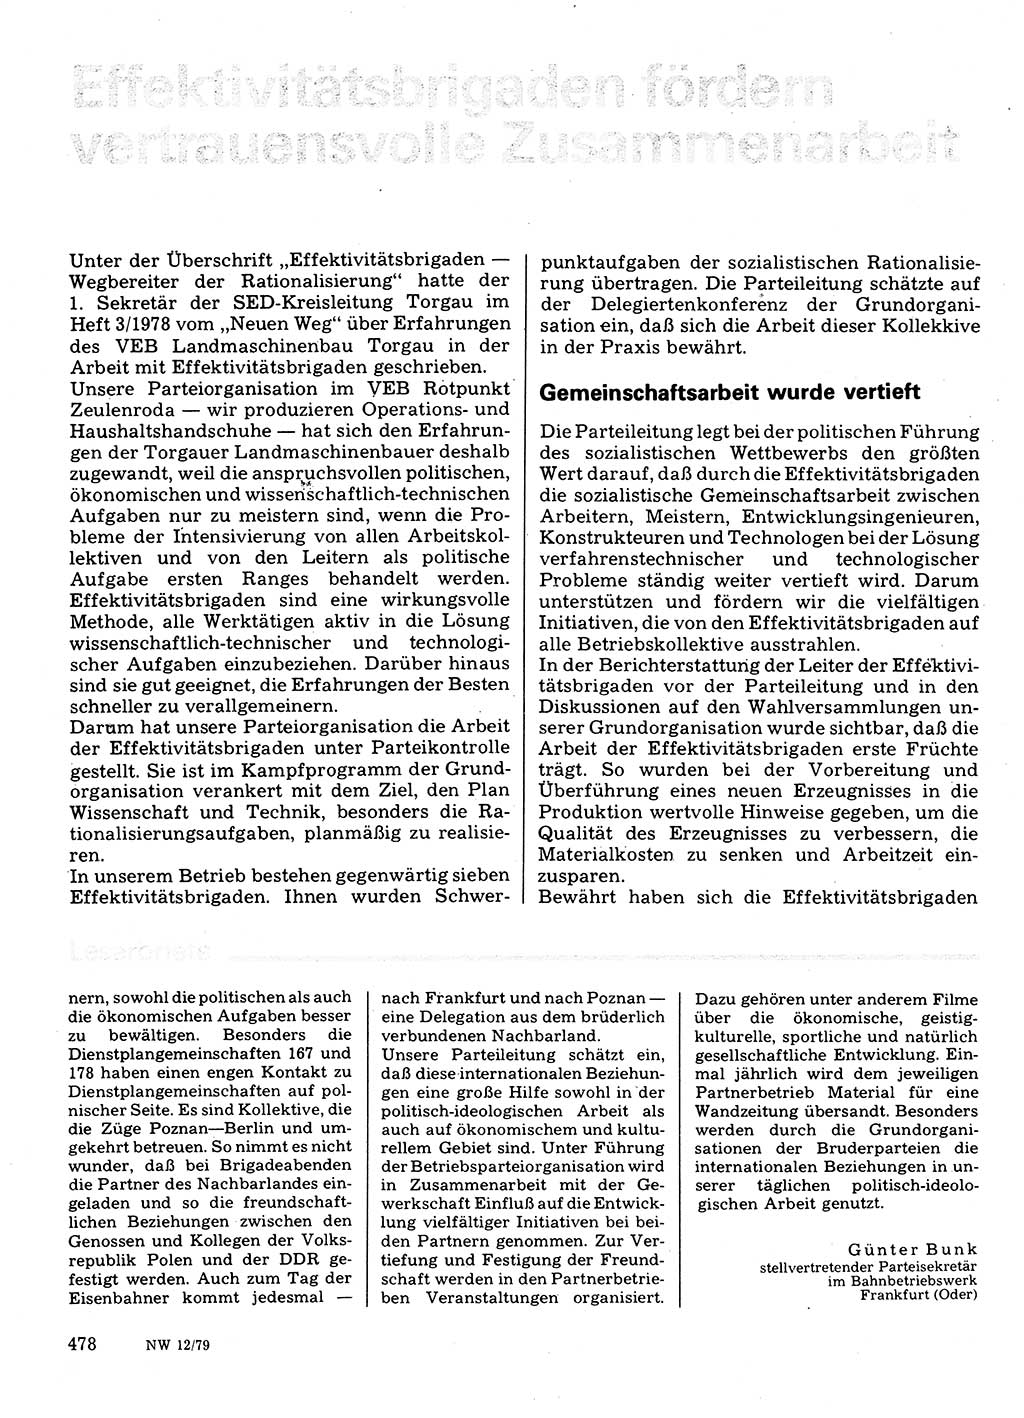 Neuer Weg (NW), Organ des Zentralkomitees (ZK) der SED (Sozialistische Einheitspartei Deutschlands) für Fragen des Parteilebens, 34. Jahrgang [Deutsche Demokratische Republik (DDR)] 1979, Seite 478 (NW ZK SED DDR 1979, S. 478)